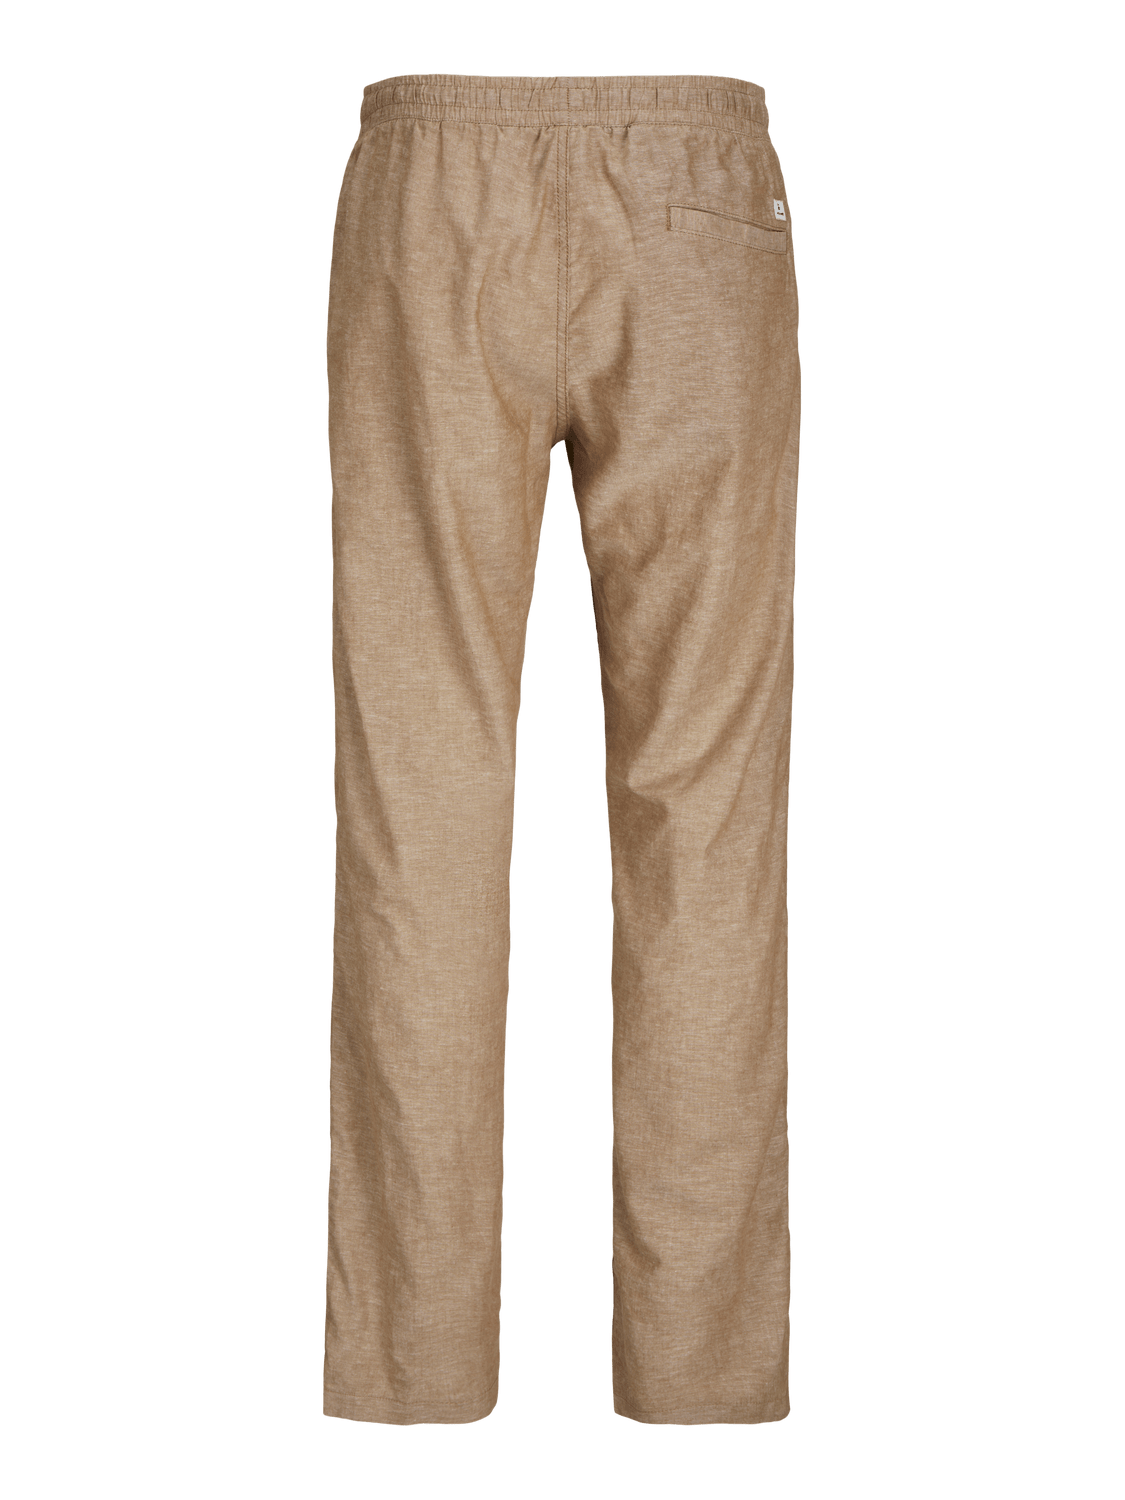 Pantalón lino beige - JPSTKANE